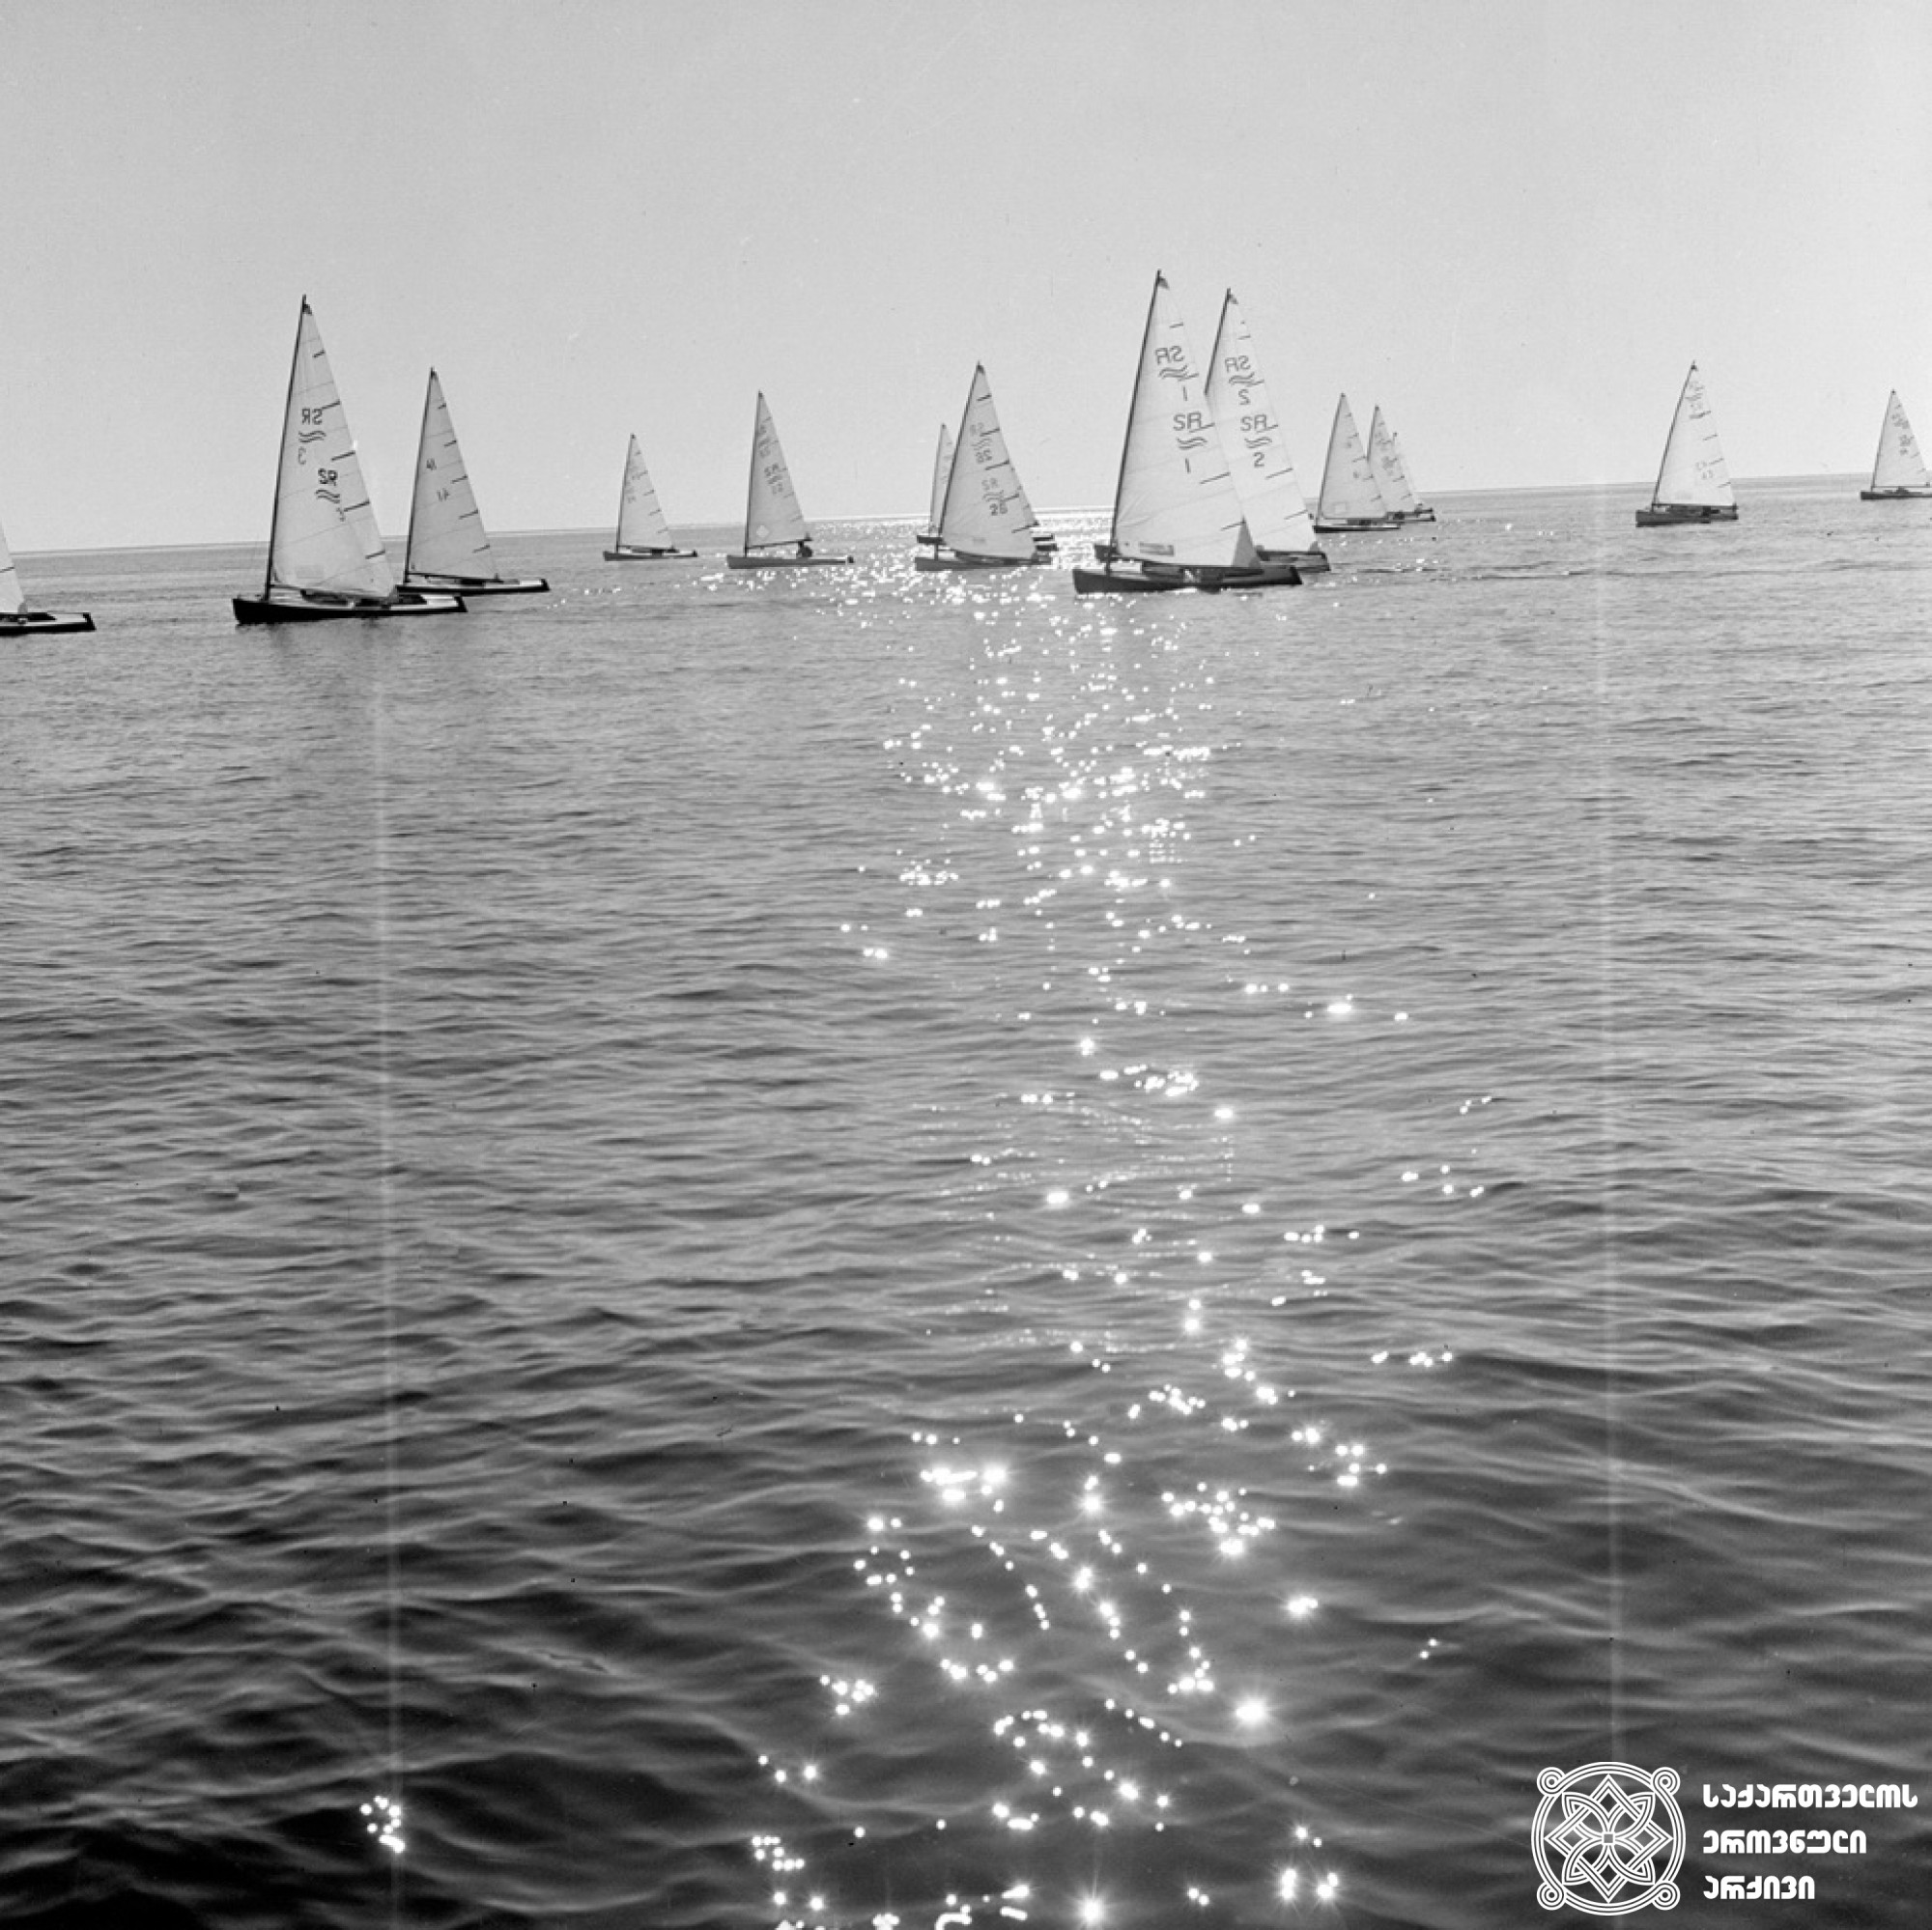 იალქნიანი რეგეტა <br>
1990 წელი <br>
ფოტოს ავტორი ირაკლი ჭოხონელიძე <br>
Sailing regatta <br>
1990<br>
Photo by Irakli Chokhonelidze <br>